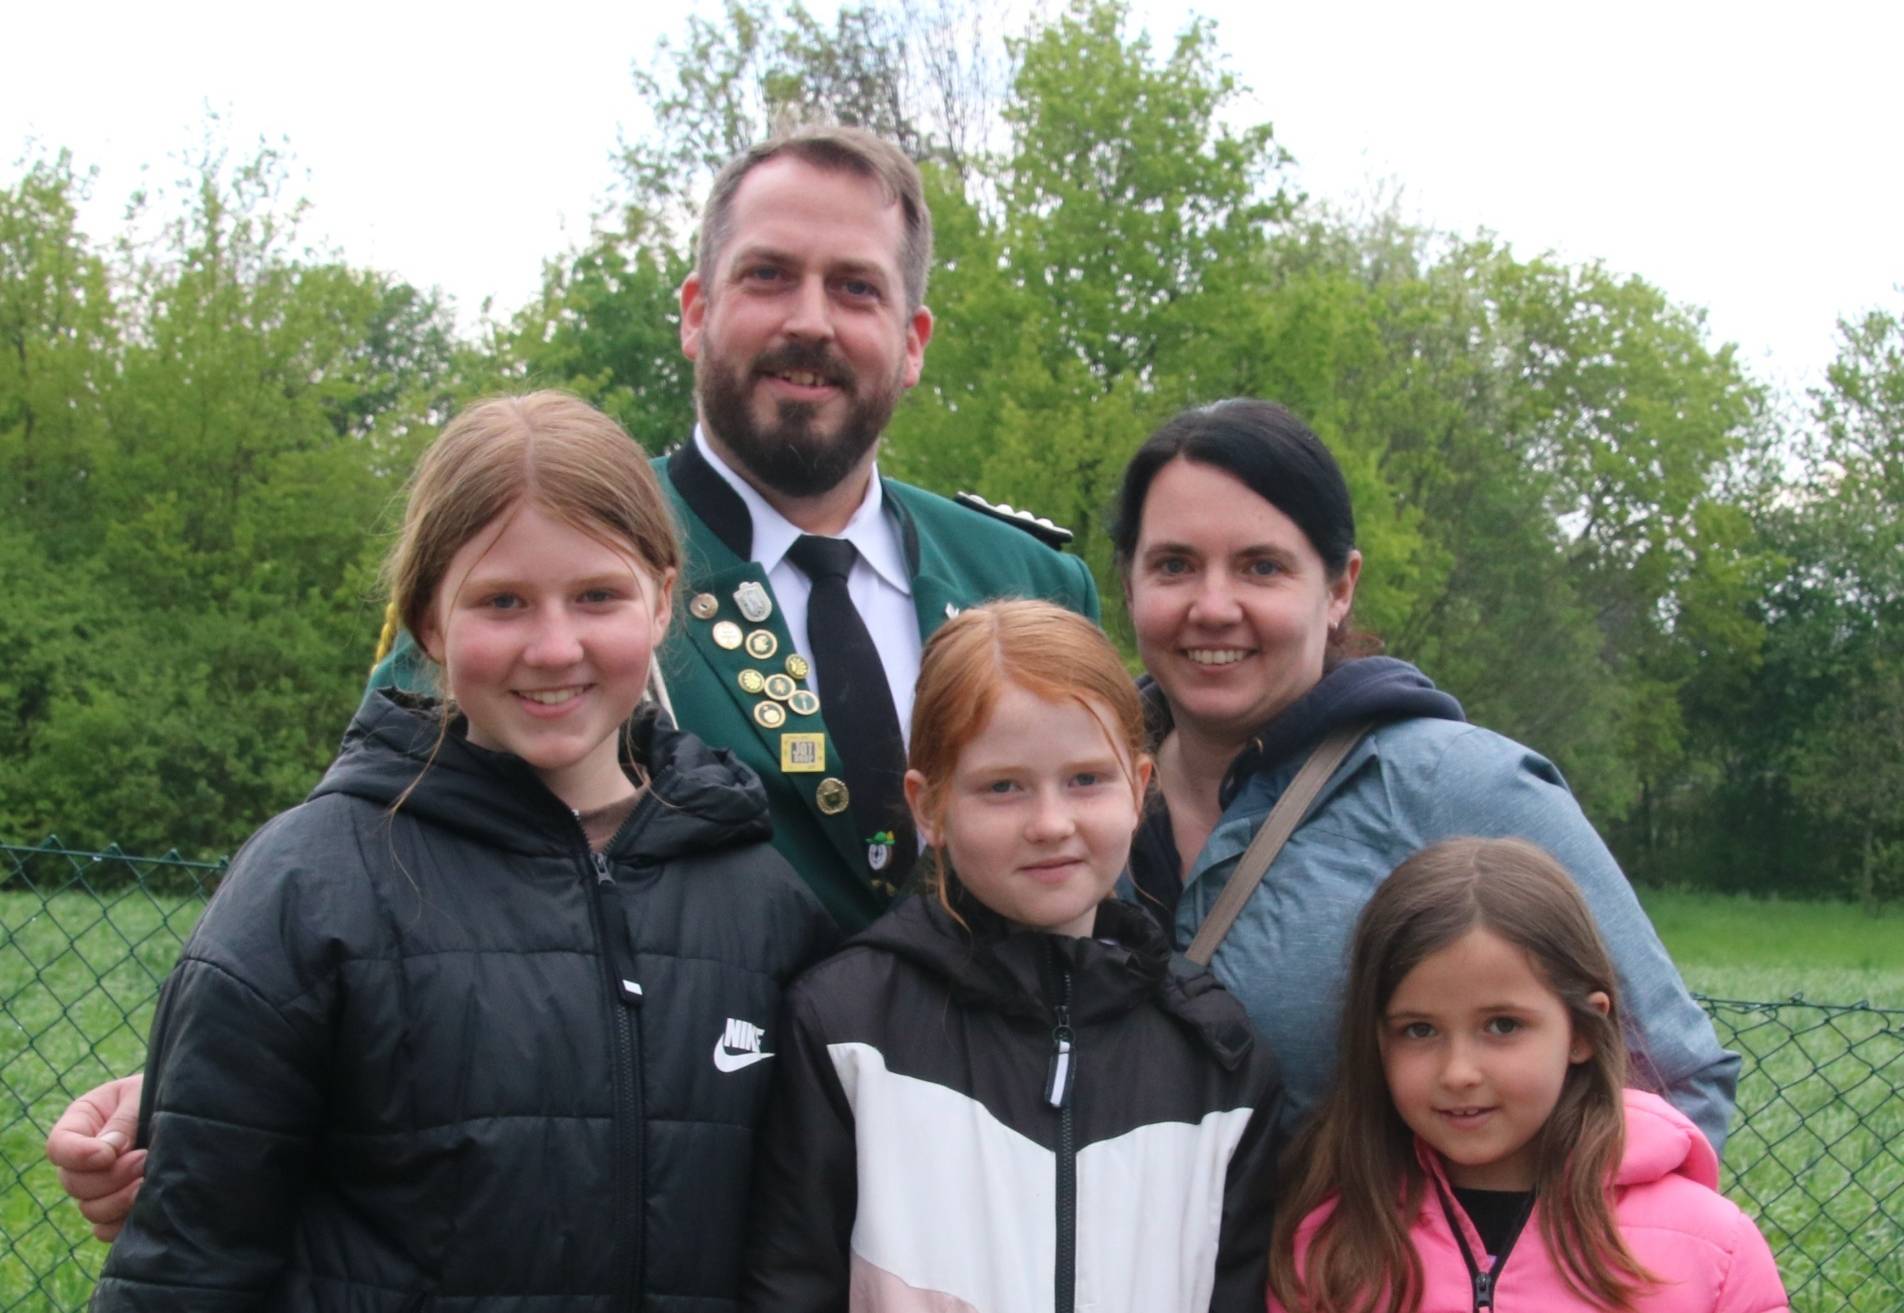  Oliver Opbroek ist neuer Kronprinz des BSV Gierath/Gubberath. Mit ihm freuen sich seine Frau Sarah und die Kinder Josina, Lenja und Mailin.   